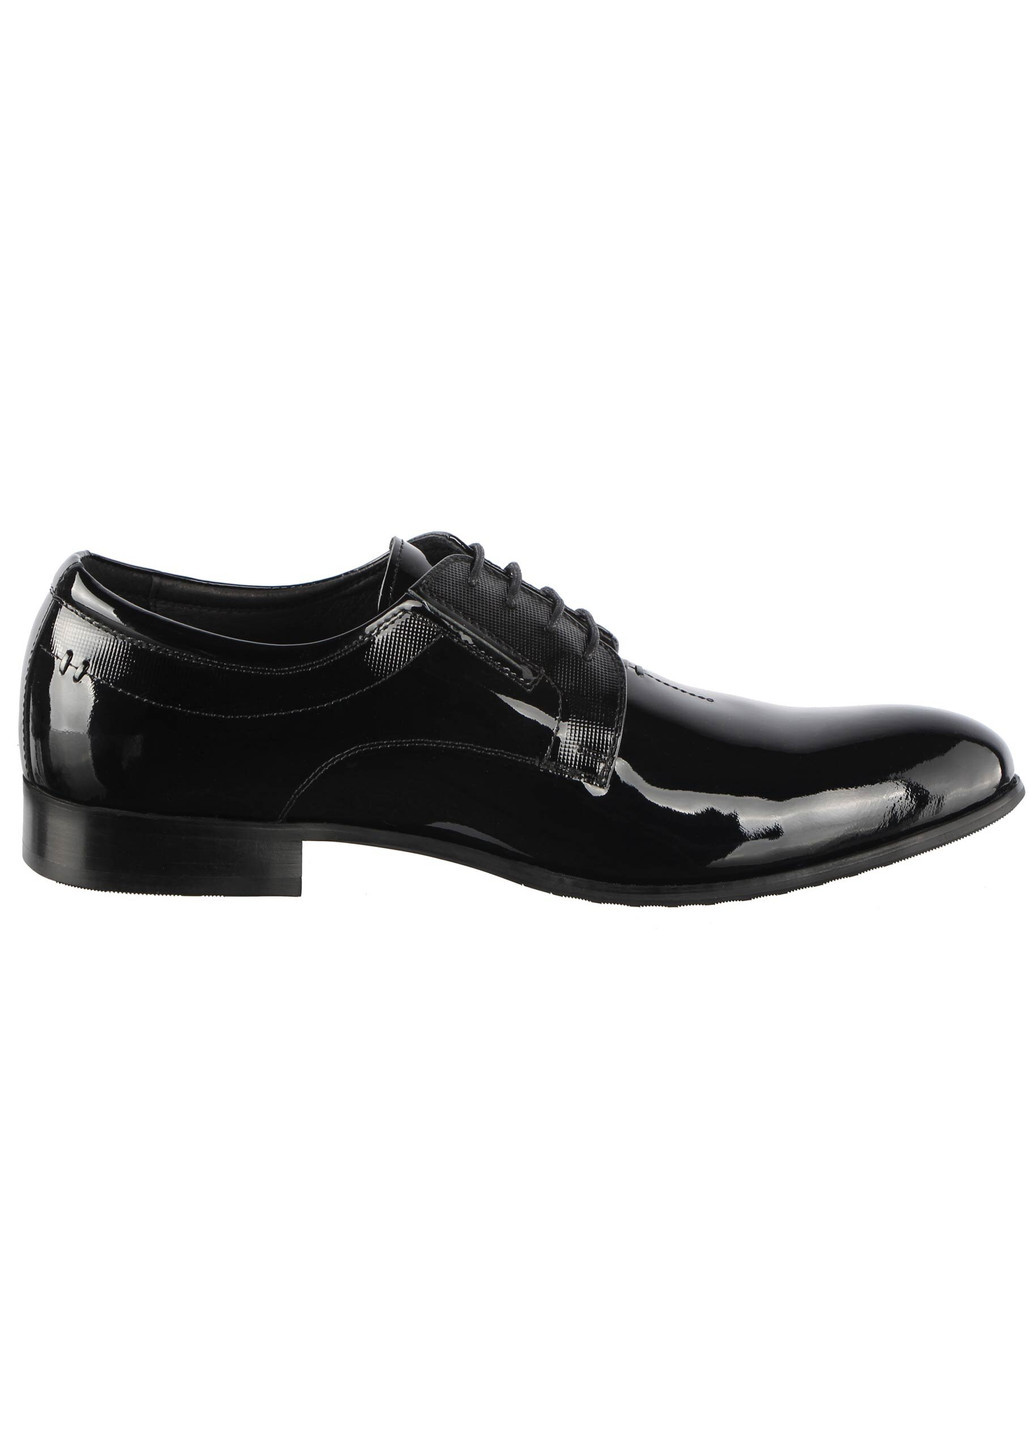 Черные мужские классические туфли 011808 Cosottinni на шнурках